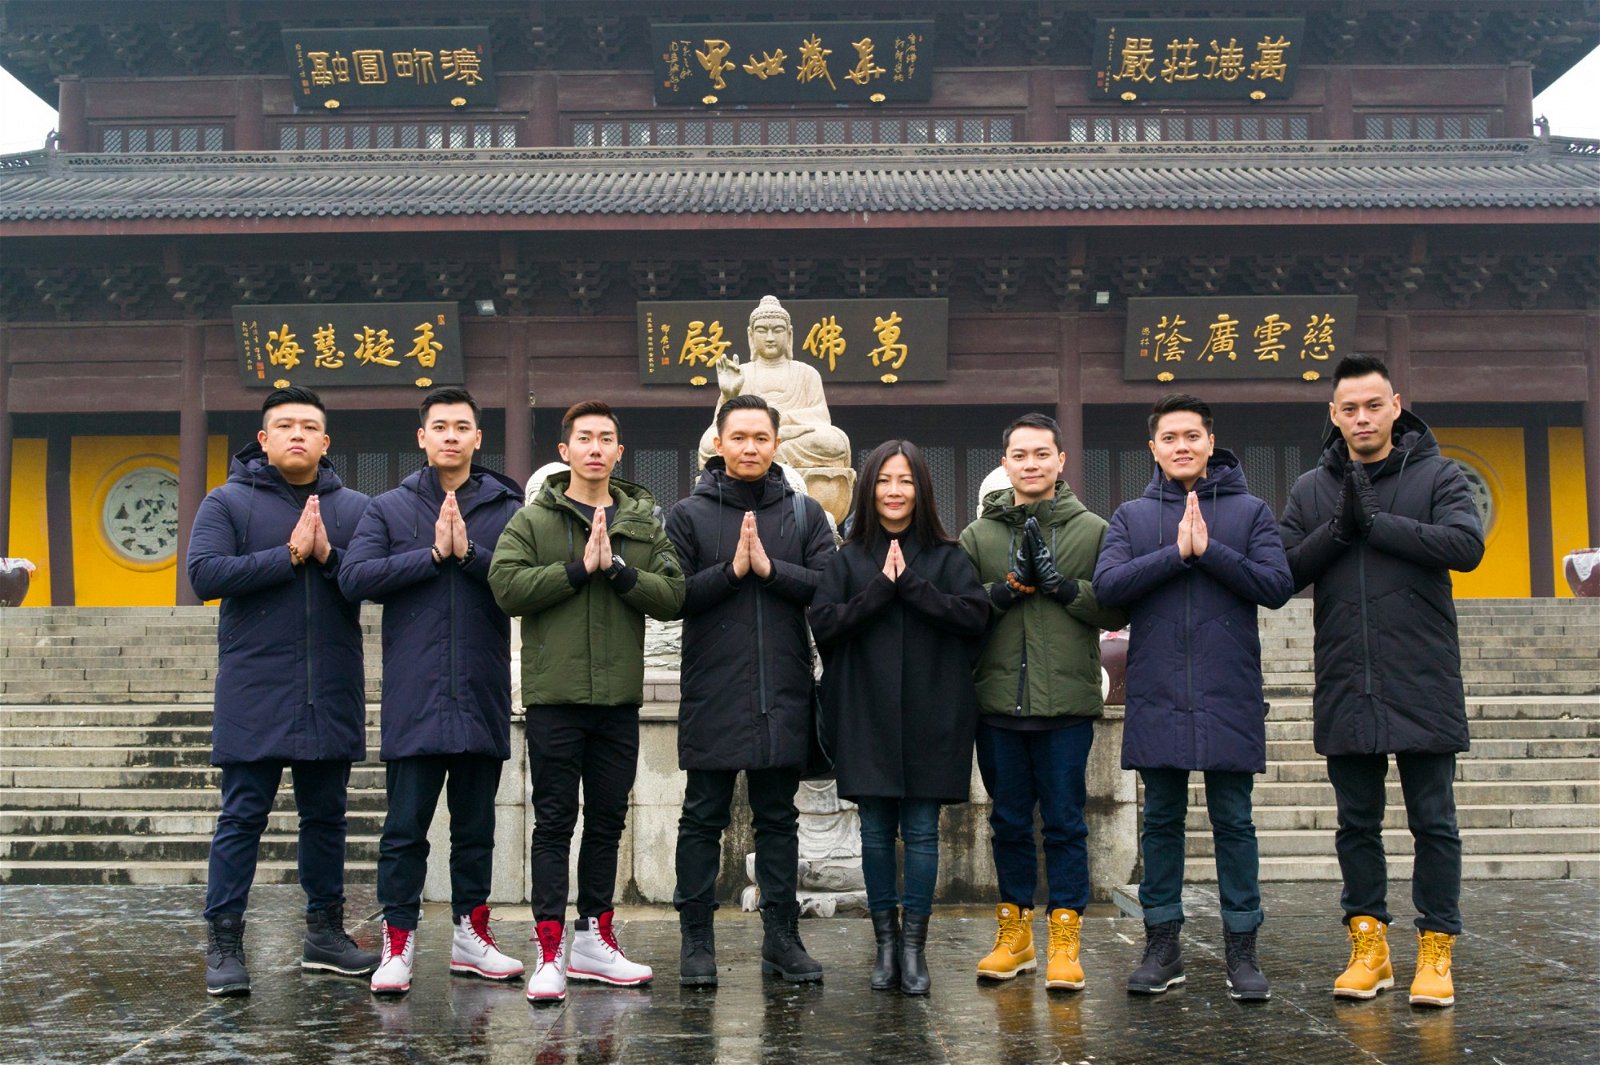 去年，黄慧音带领“佛乐男团”净世金刚到中国跨年演唱。